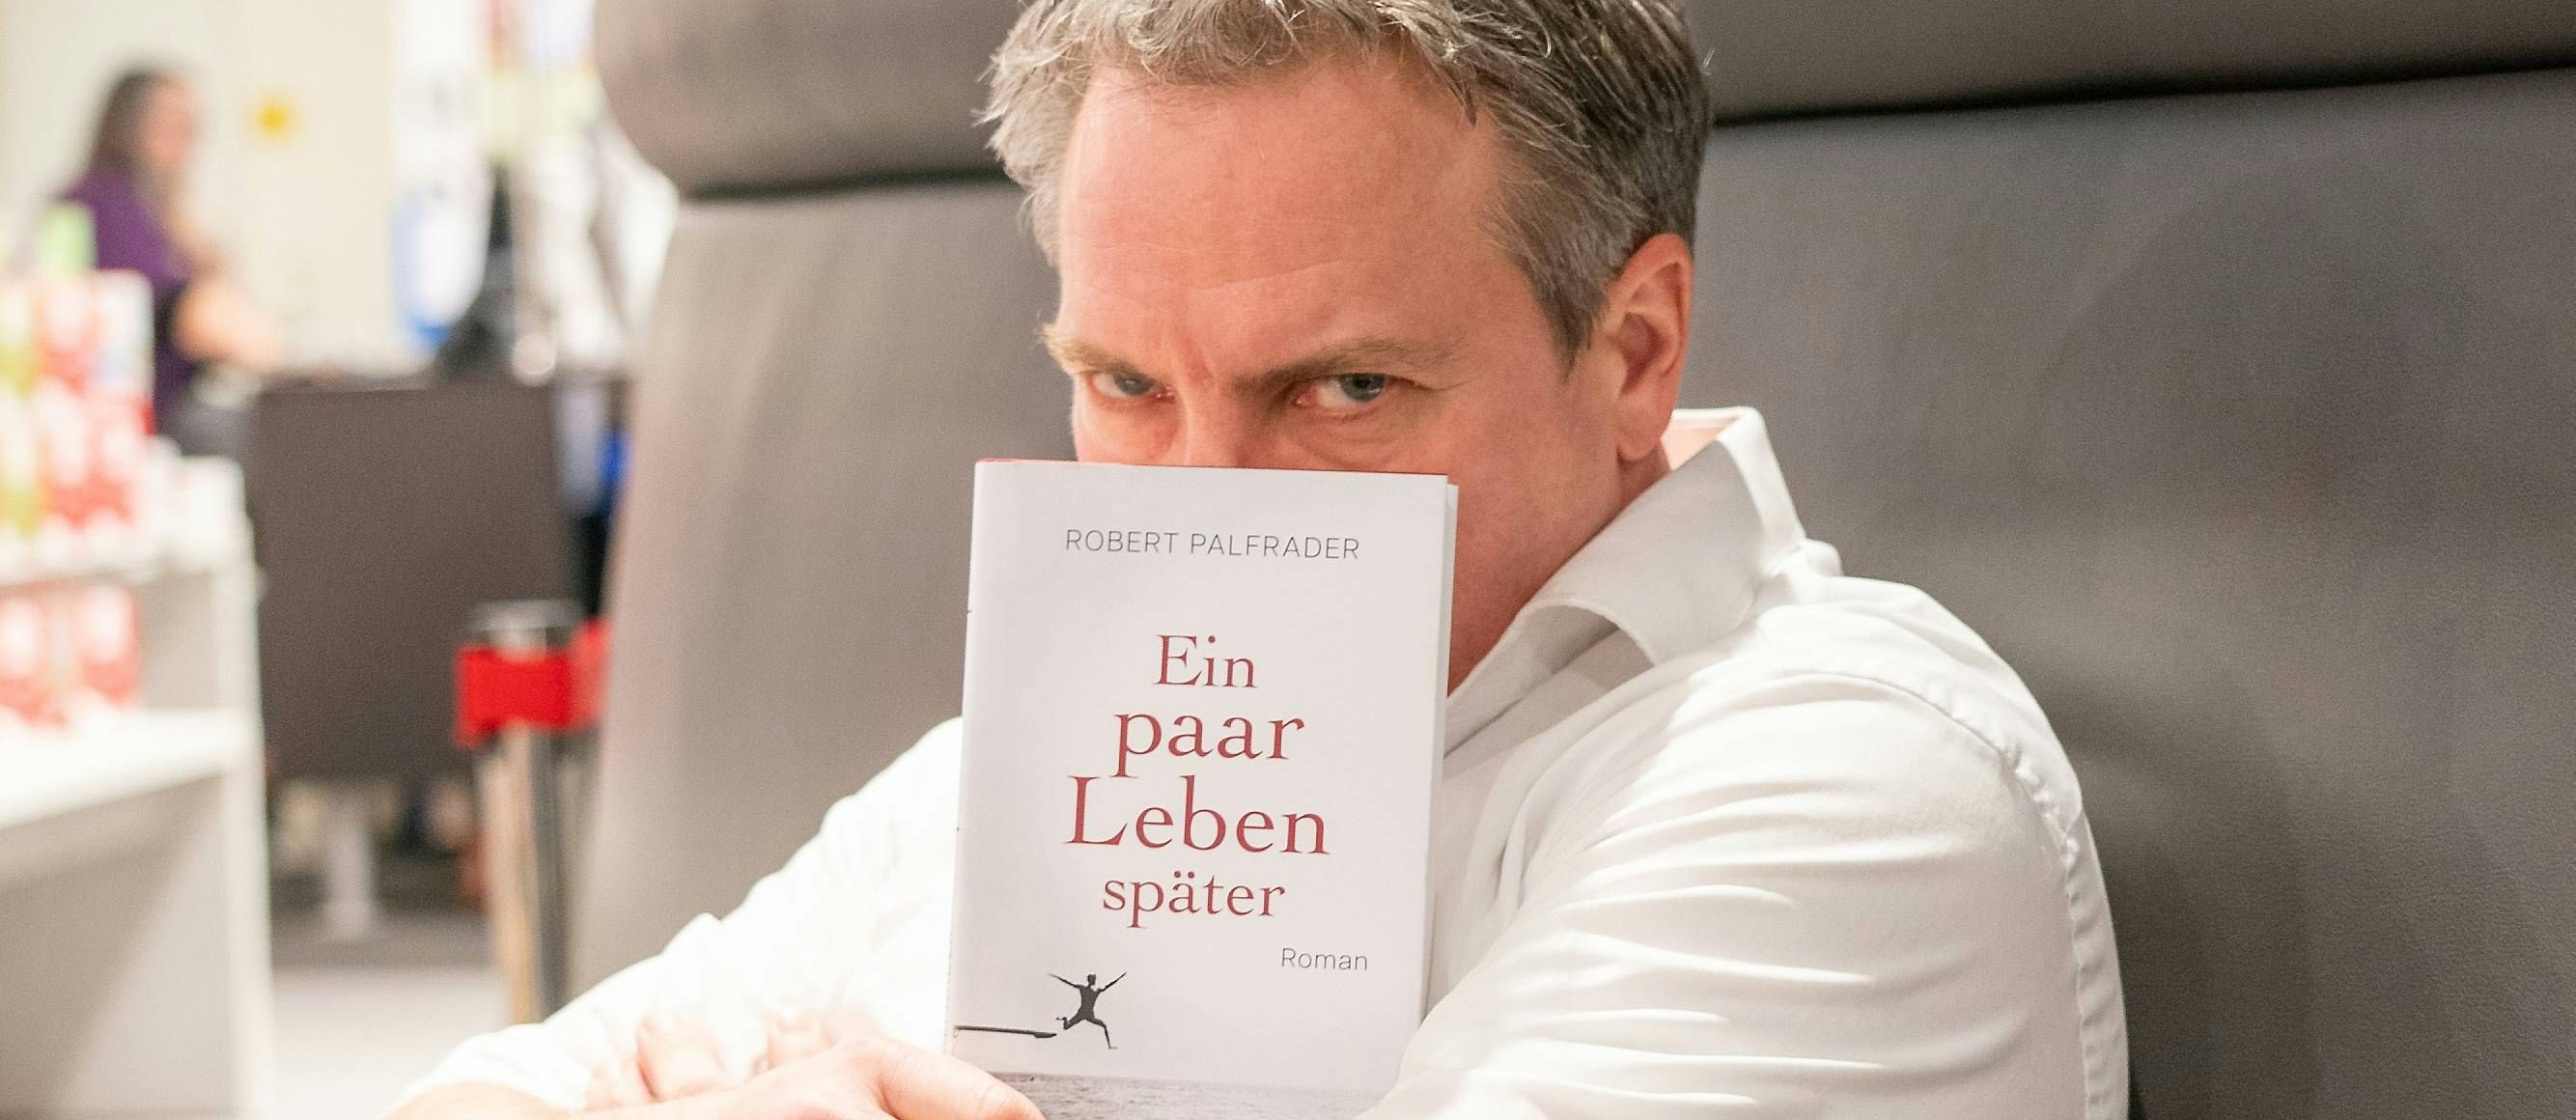 Im Thalia Wien-Mitte stellte Robert Palfrader sein neues Buch "Ein paar Leben später" vor